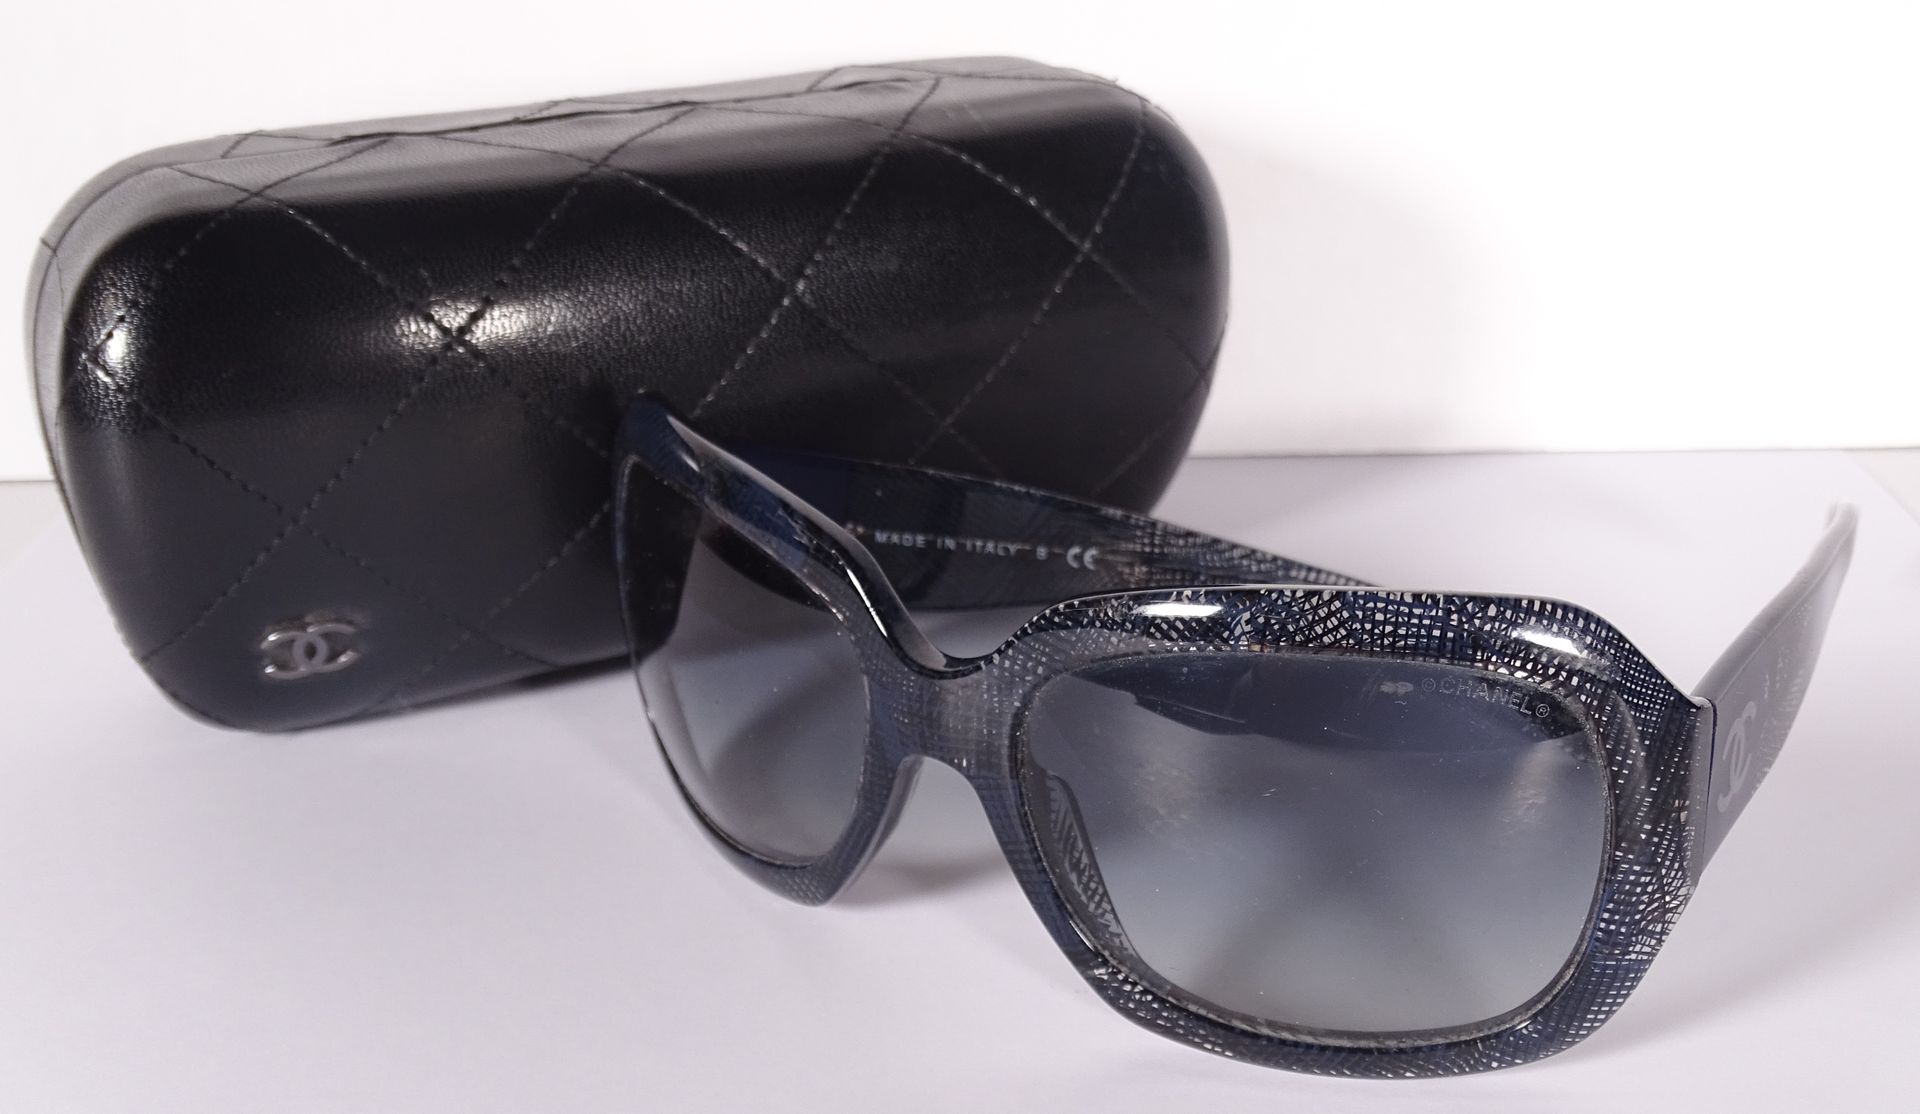 CHANEL Coppia di occhiali da sole in pvc blu navy traslucido con una rete.

Nell&hellip;